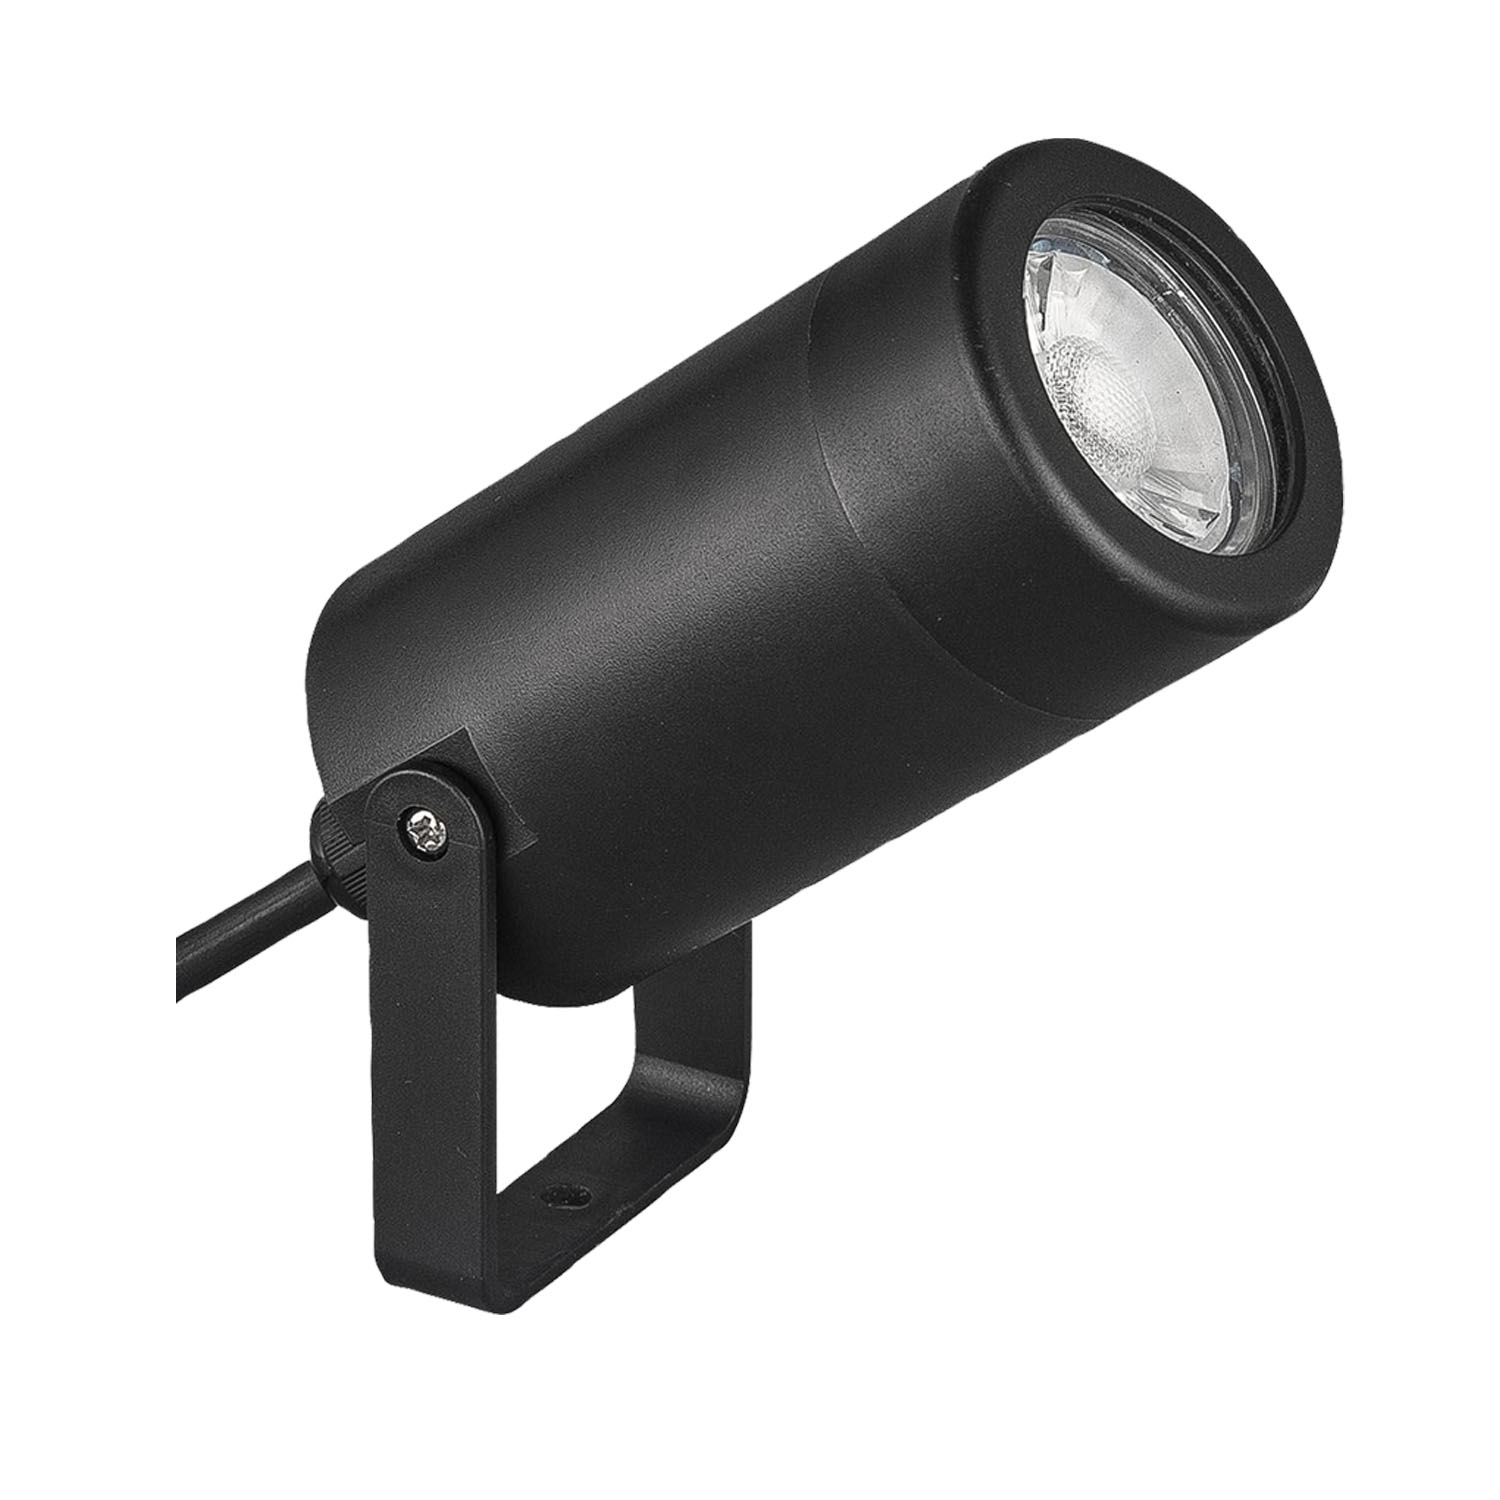 Bogholder Stifte bekendtskab løst Garden LED Spot Lights GU10 Outdoor Spotlight IP44 Path Yard Lamps  Adjustable | eBay